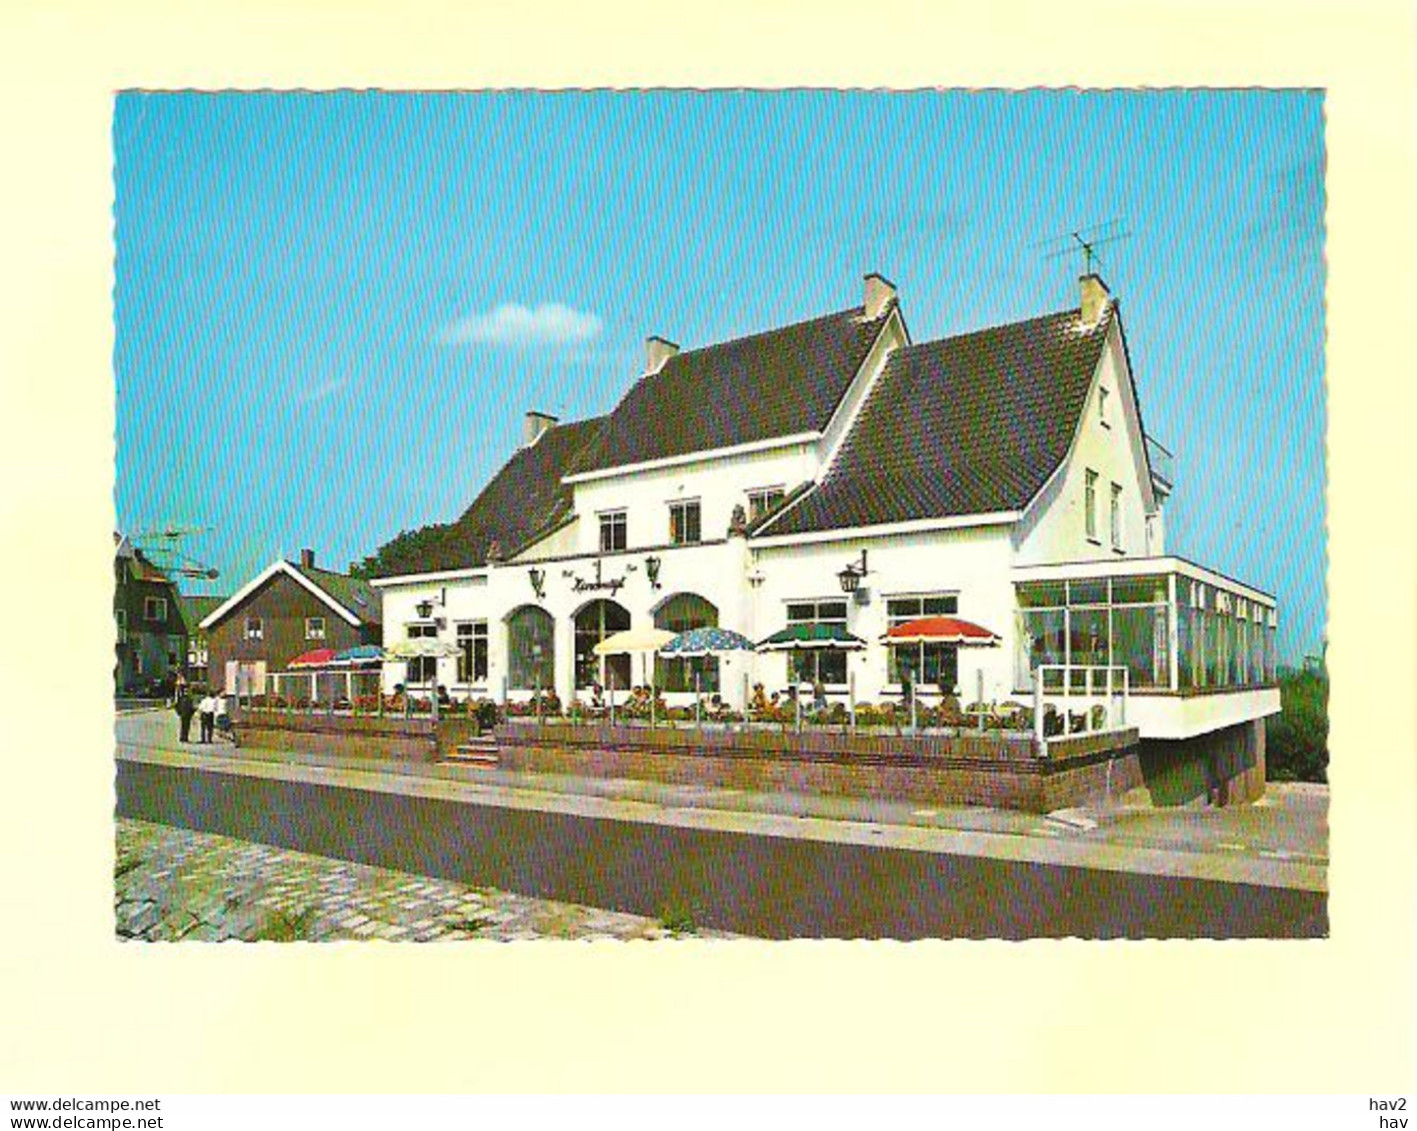 Kinderdijk Hotel Kinderdijk RY27428 - Kinderdijk